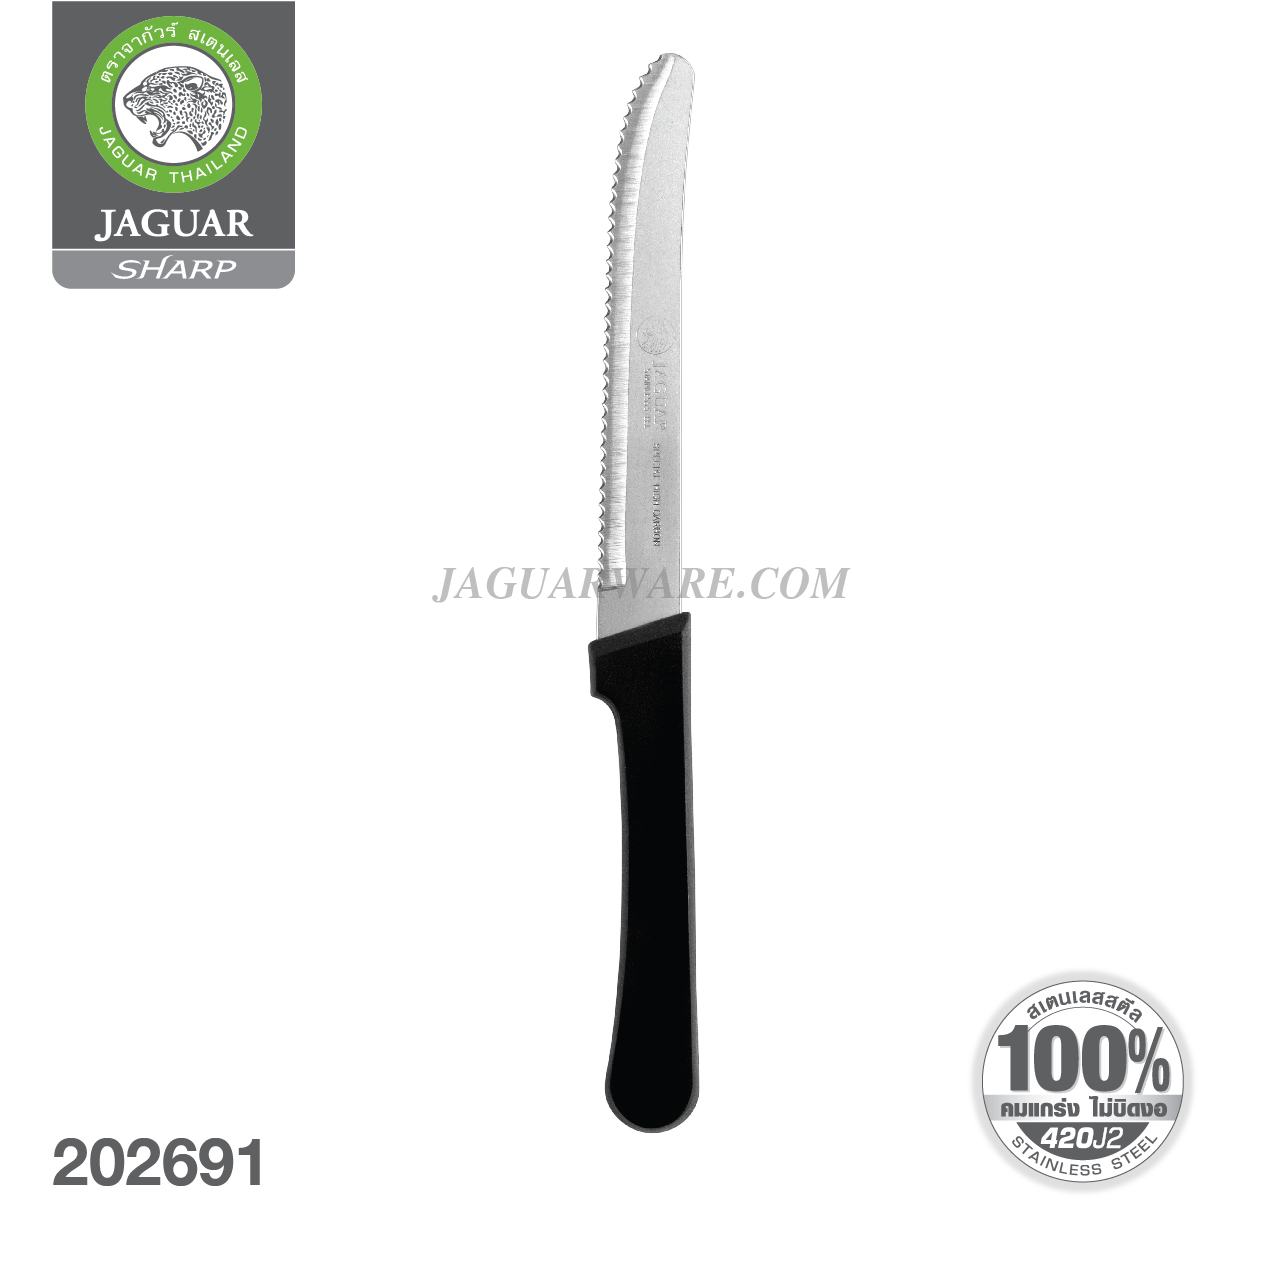 JAGUAR มีดสเต็ก สเตนเลส ด้ามพลาสติก ฟันฉลุ ฟราน  ตราจากัวร์ 420 แท้ 100% เกรดใช้กับอาหาร Food Grade ISO9001 ผลิตในประเทศไทย